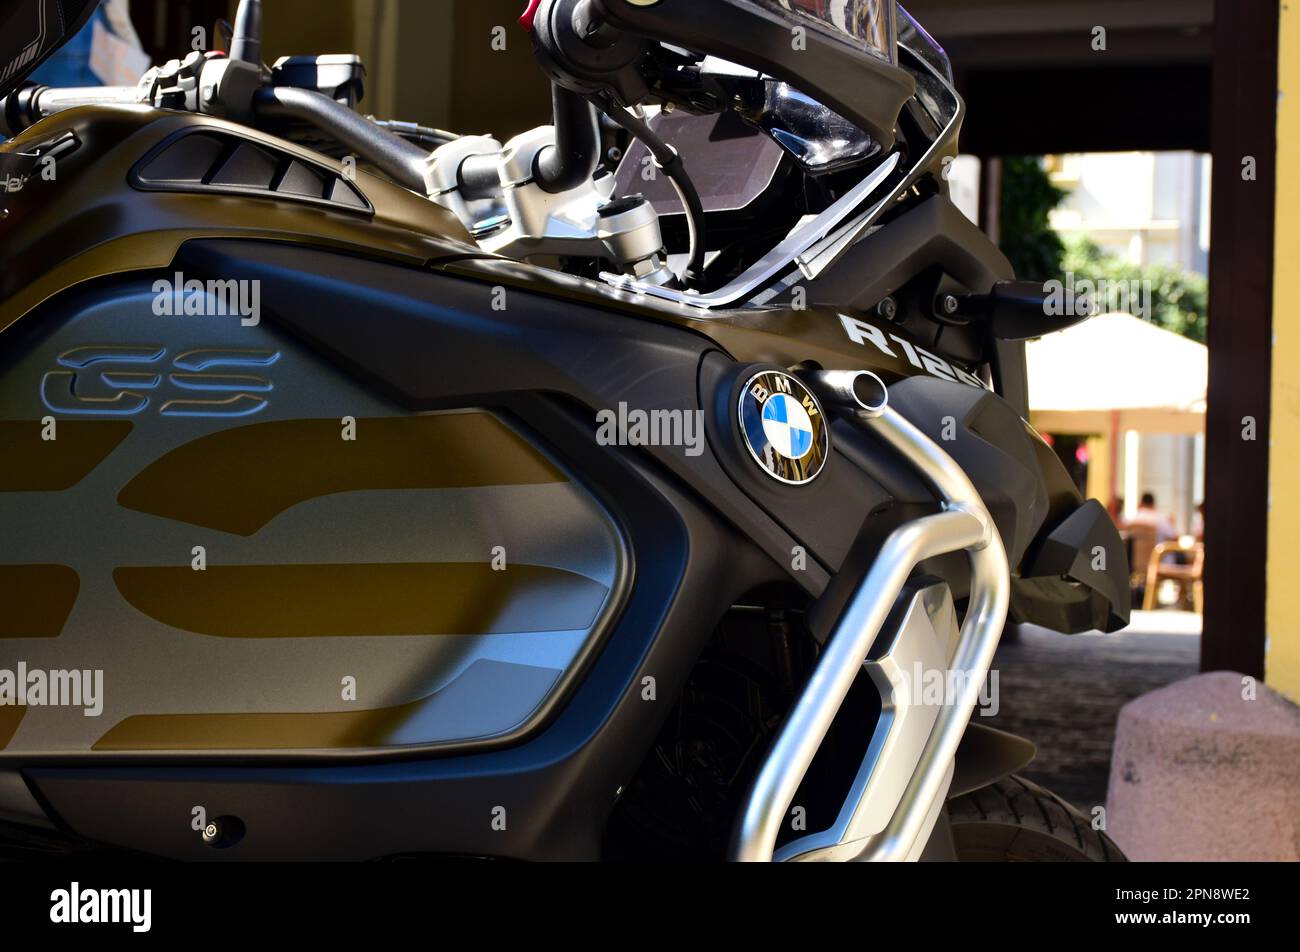 Nahaufnahme des BMW R 1250 GS Motorrads mit rundem blau-weißem Logo und Emblem sowie verchromtem Schutzrahmen. Tarnung, Militärfarbe Stockfoto